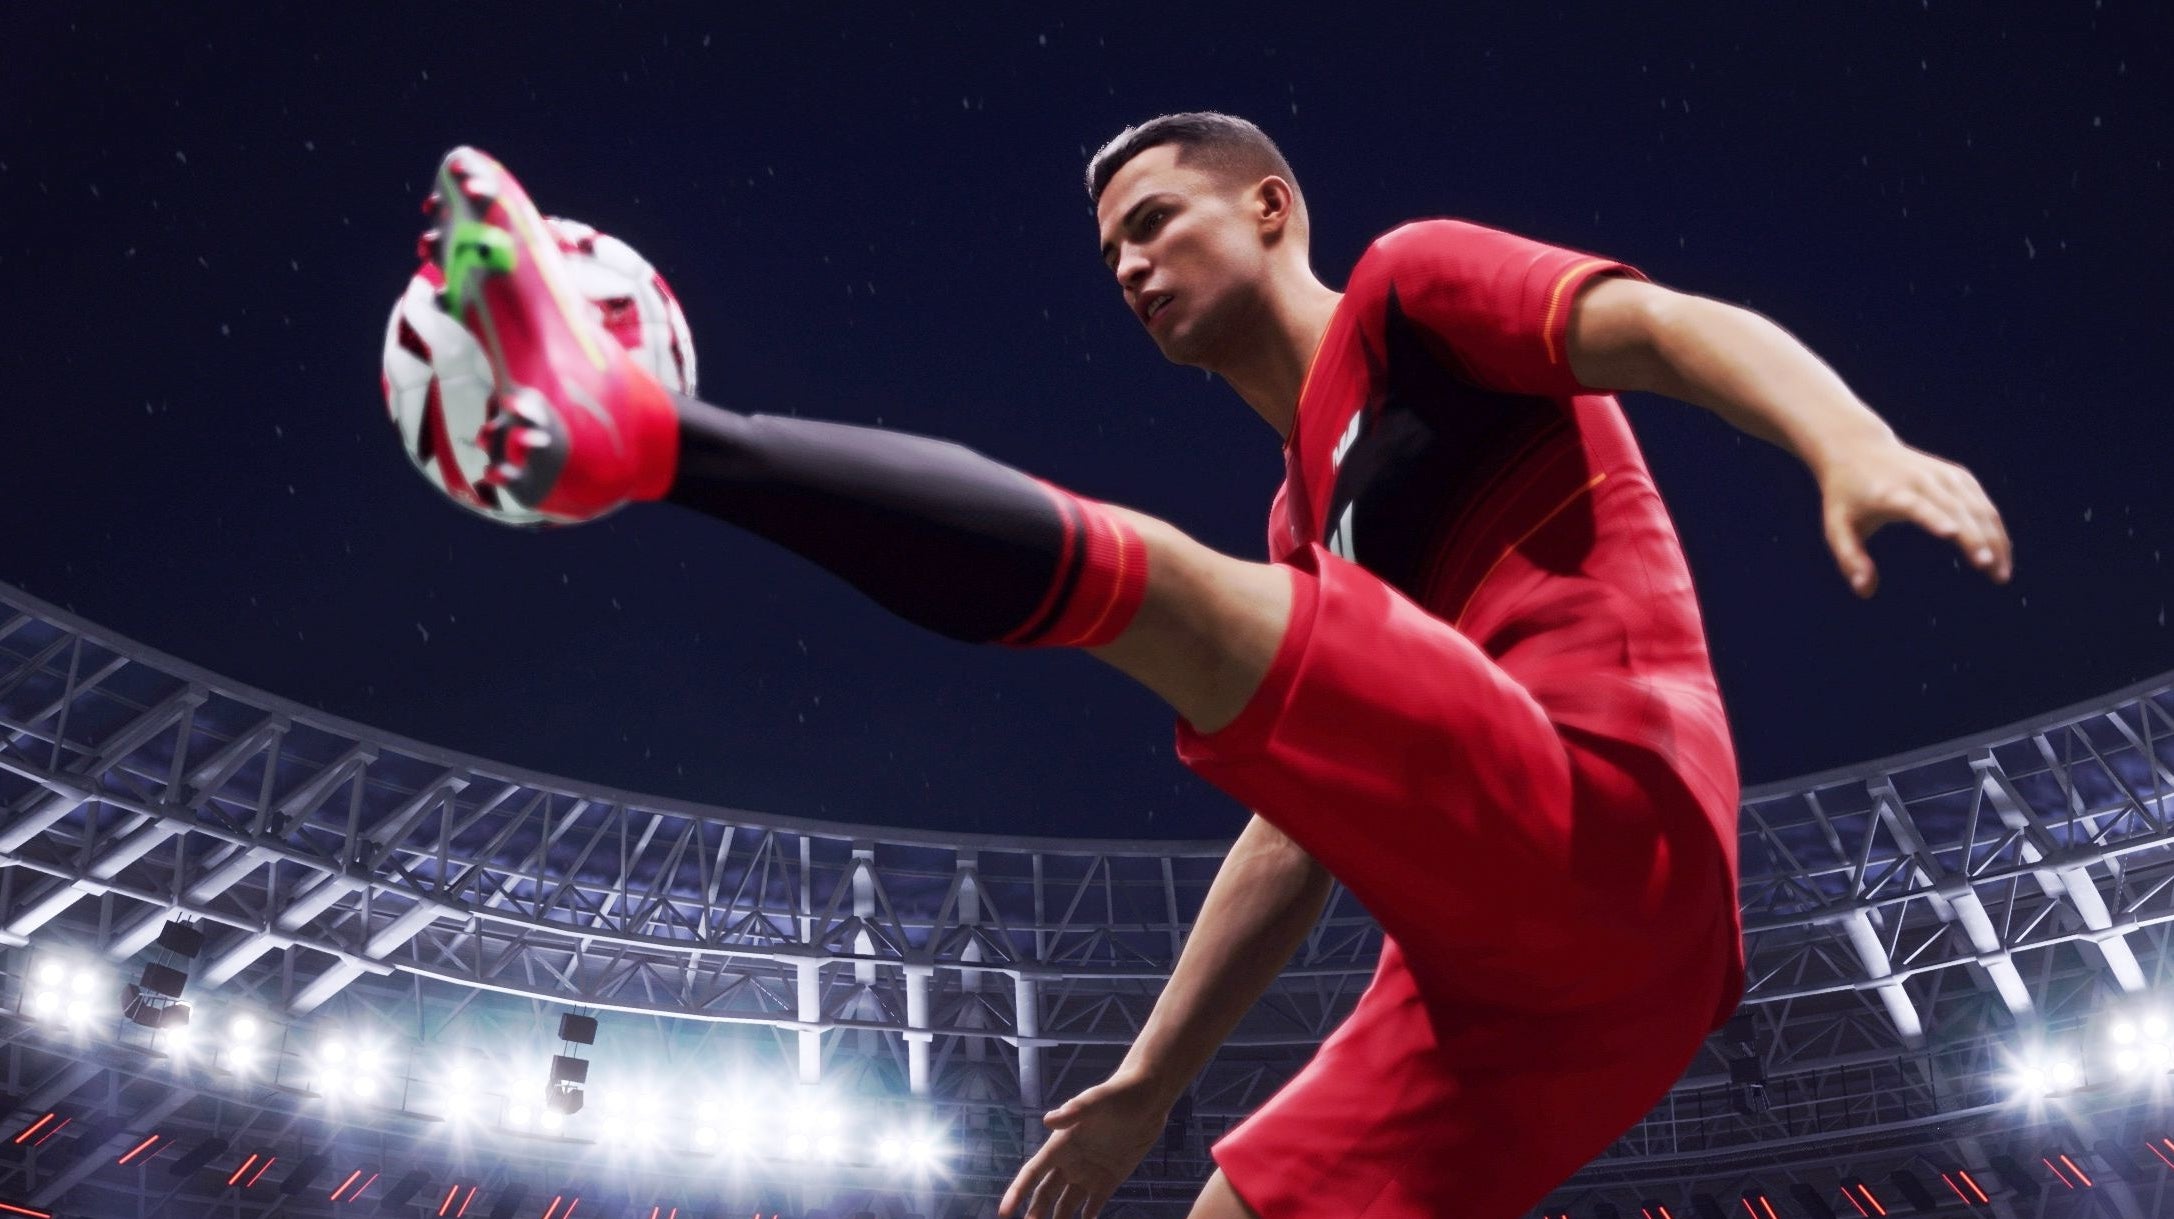 UFL bietet FIFA die Stirn und stellt Cristiano Ronaldo als Werbegesicht vor Eurogamer.de